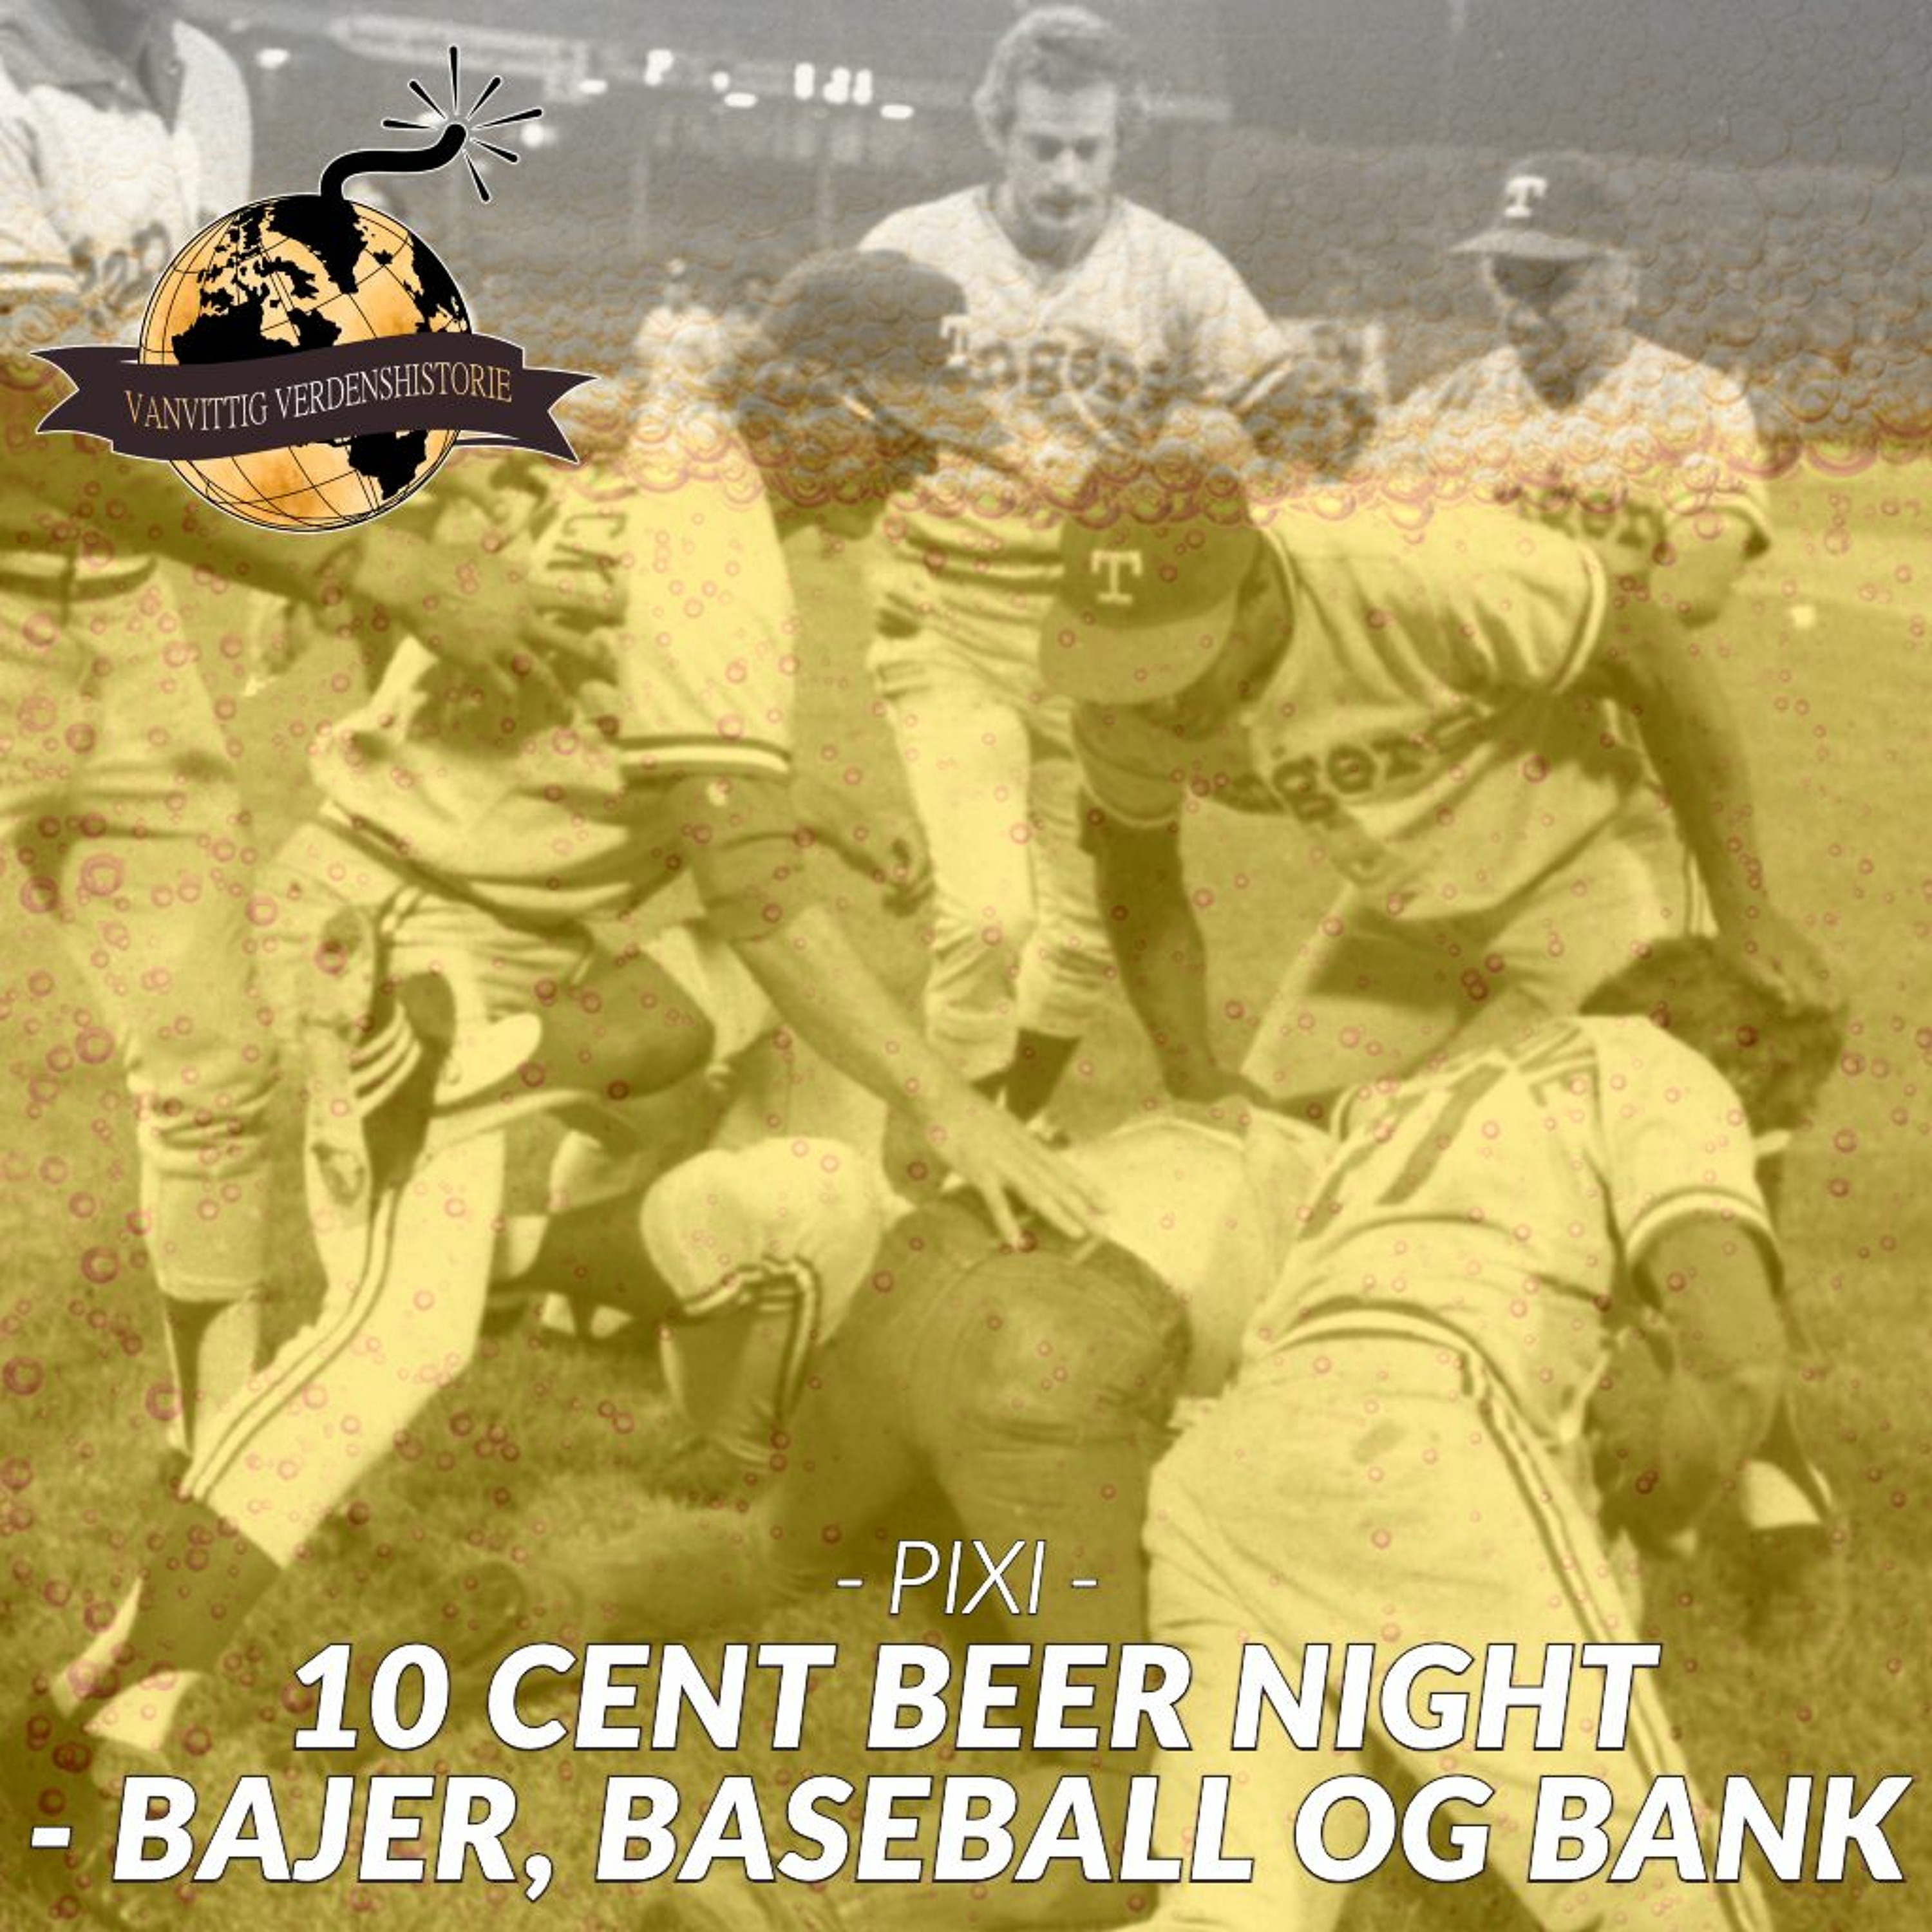 PIXI: 10 Cent Beer Night - Bajer, Baseball og Bank!